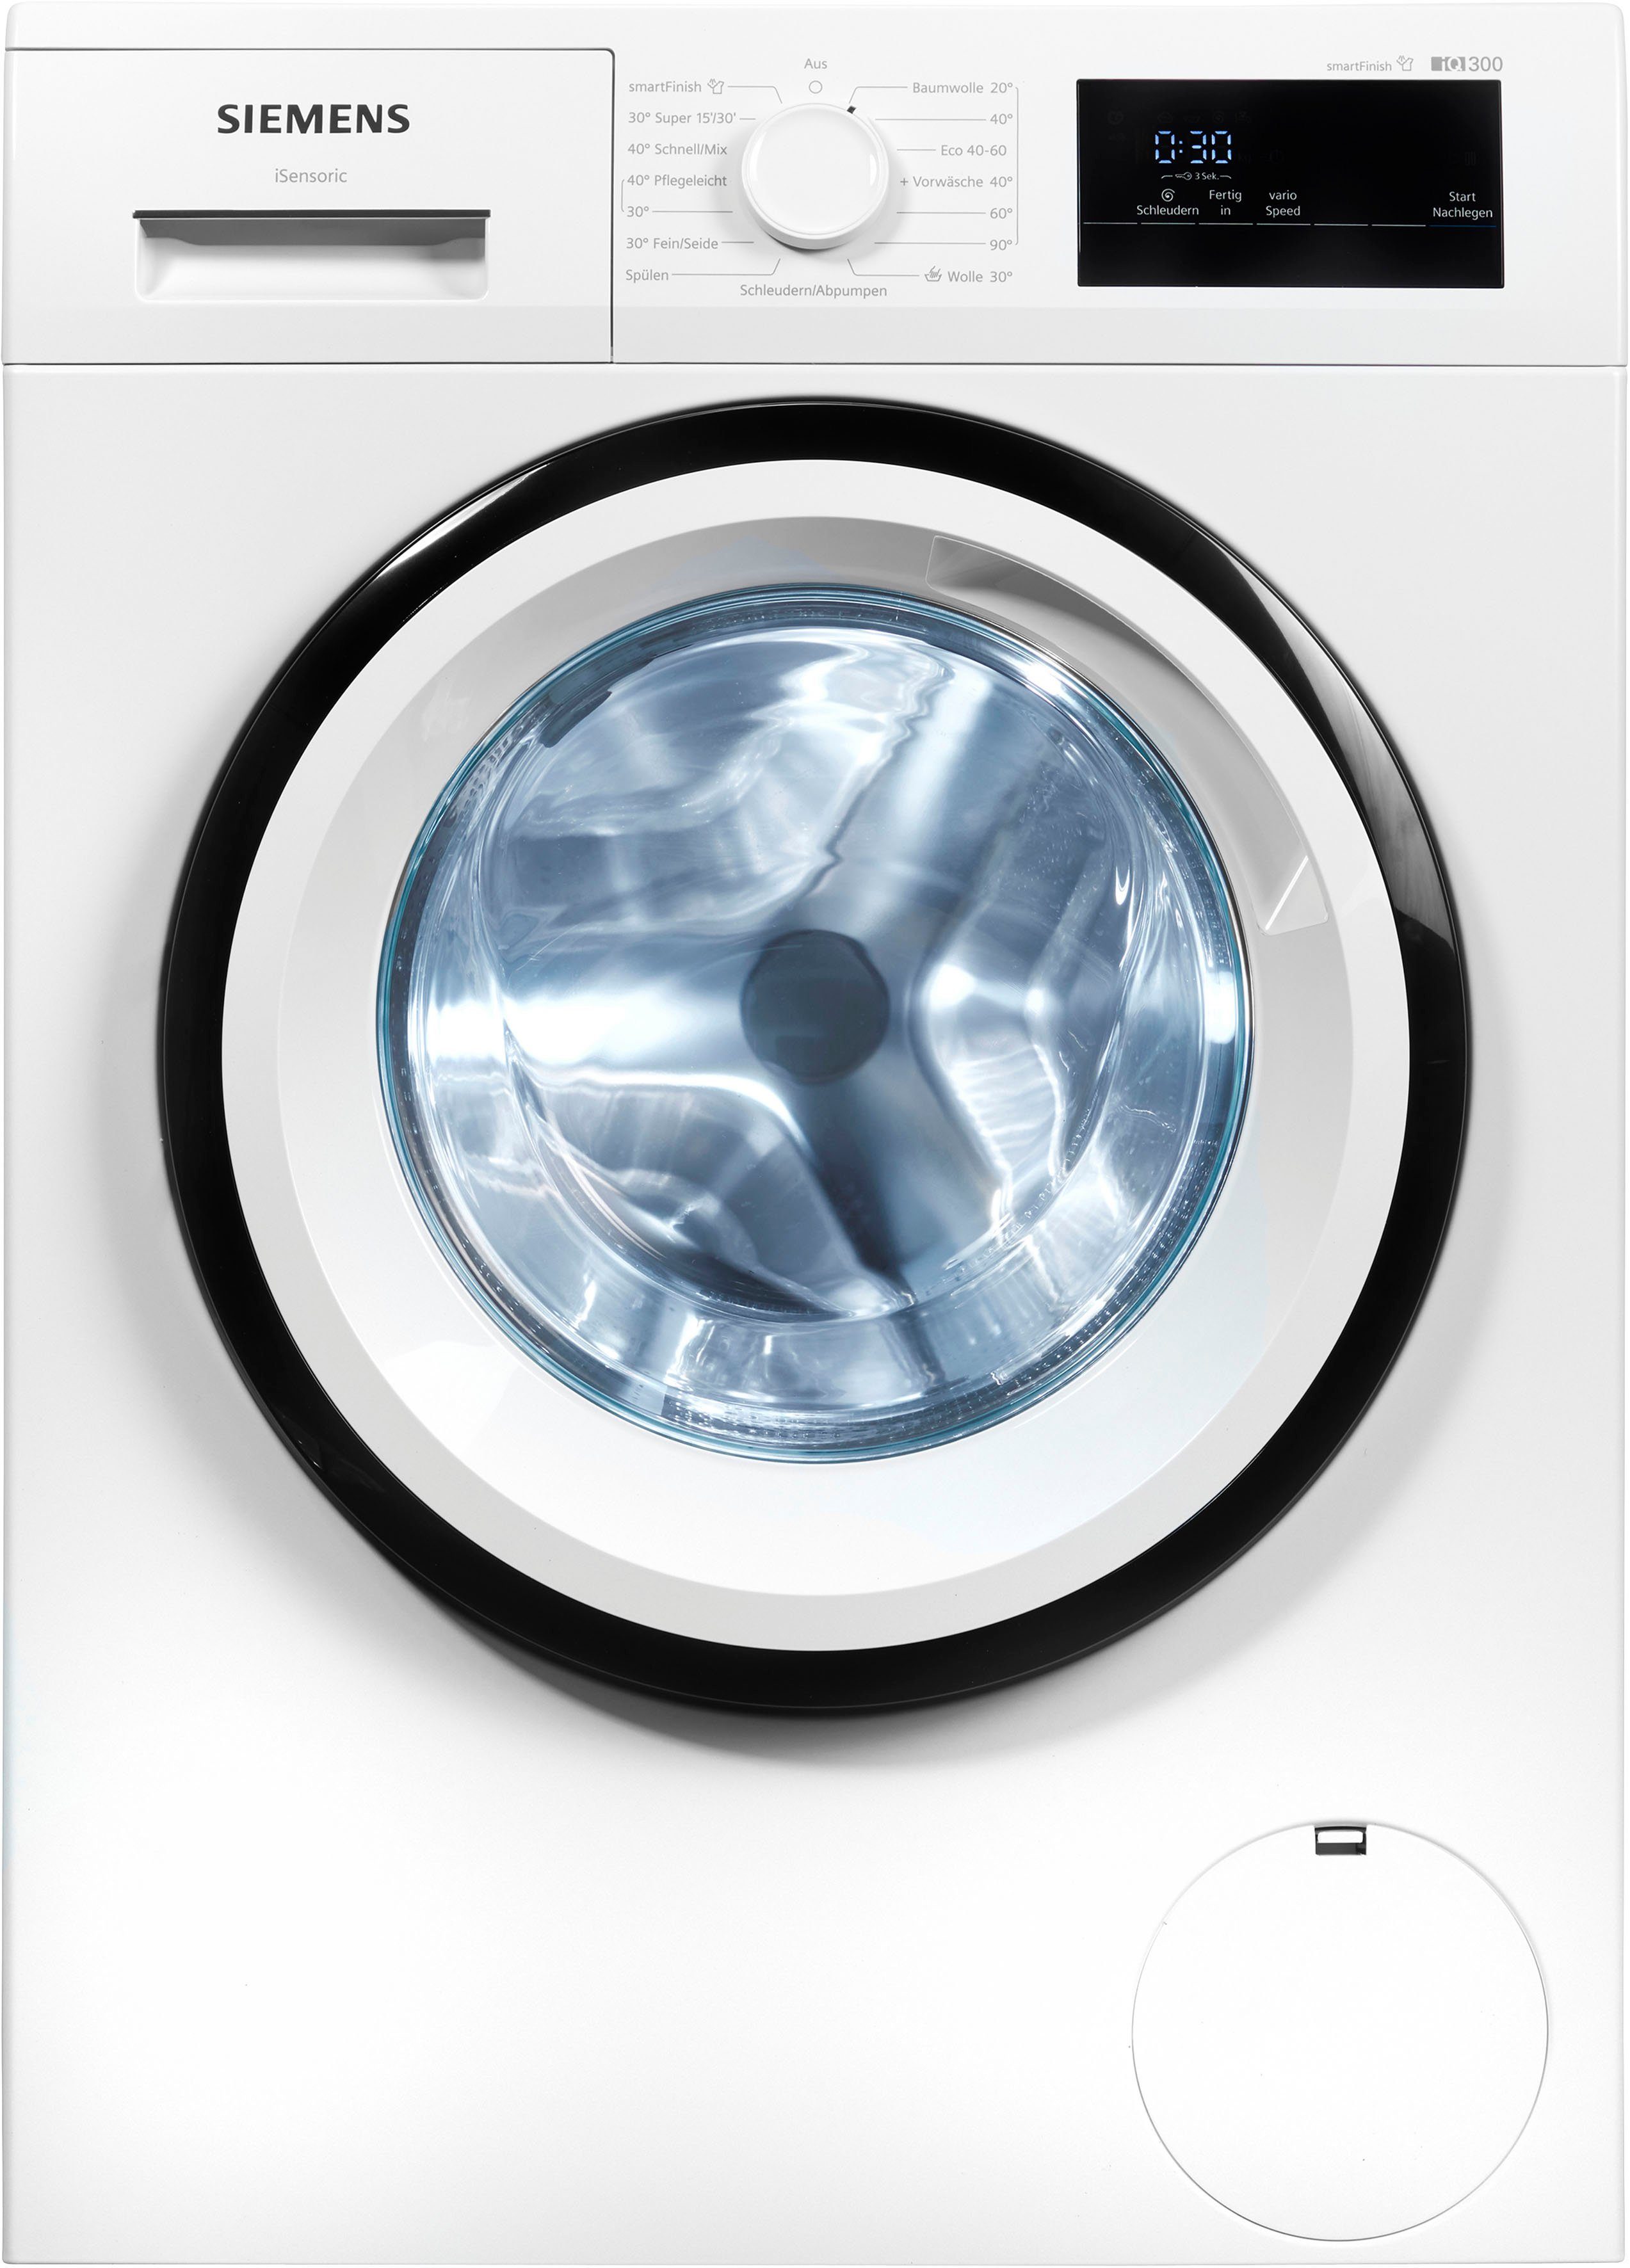 kg, Knitterfalten Dampf U/min, iQ300 – 8 SIEMENS smartFinish Waschmaschine WM14N0A4, sämtliche glättet 1400 dank